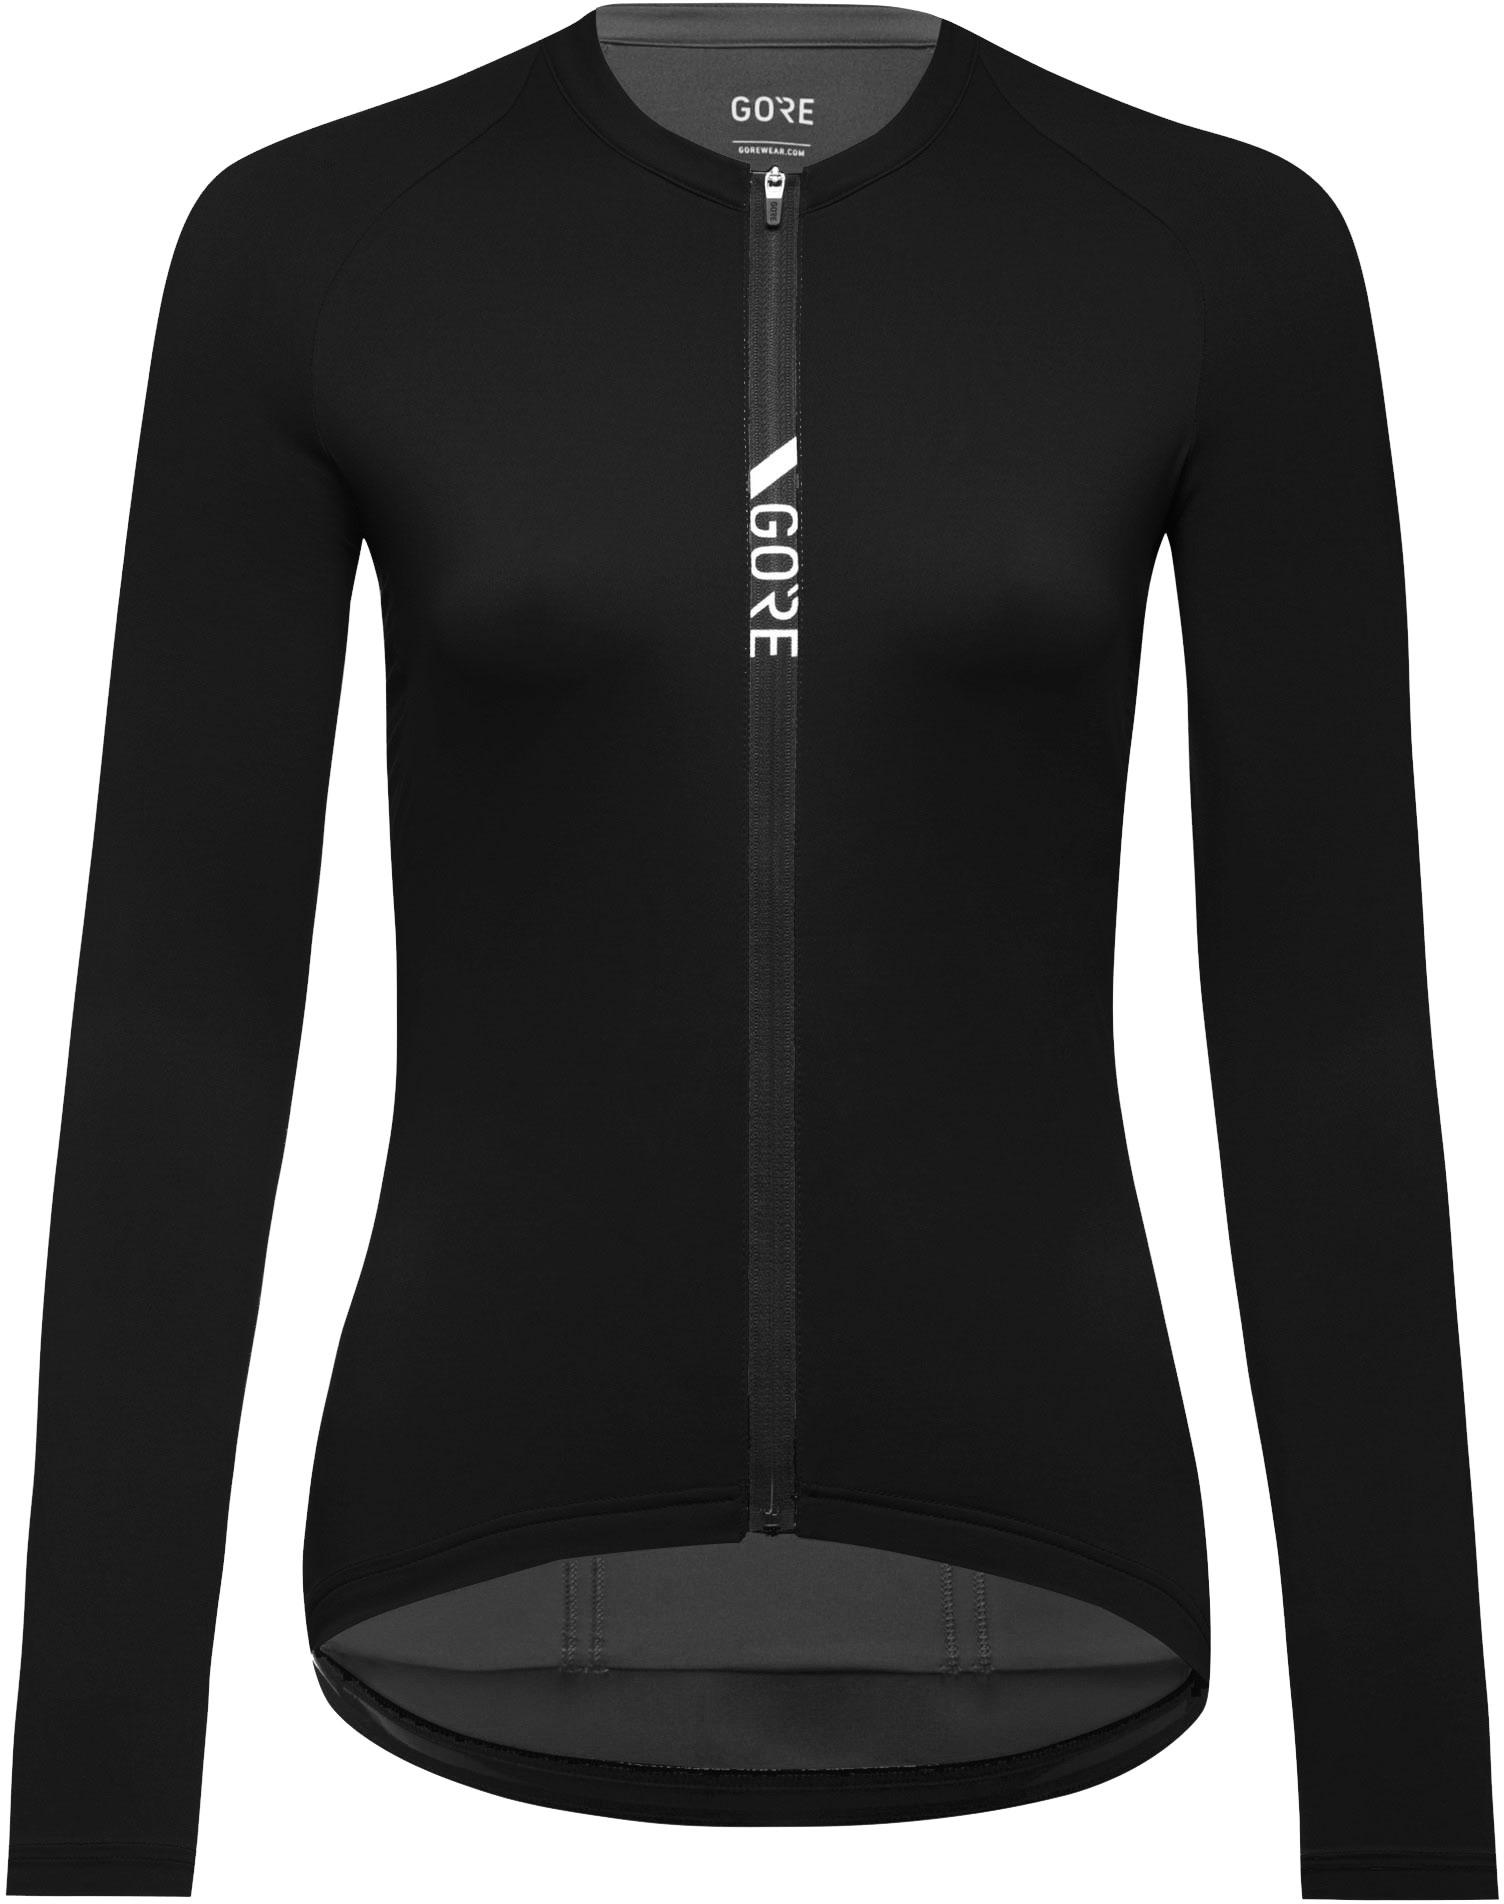 Gorewear Womens Torrent Long Sleeve Jersey - Black